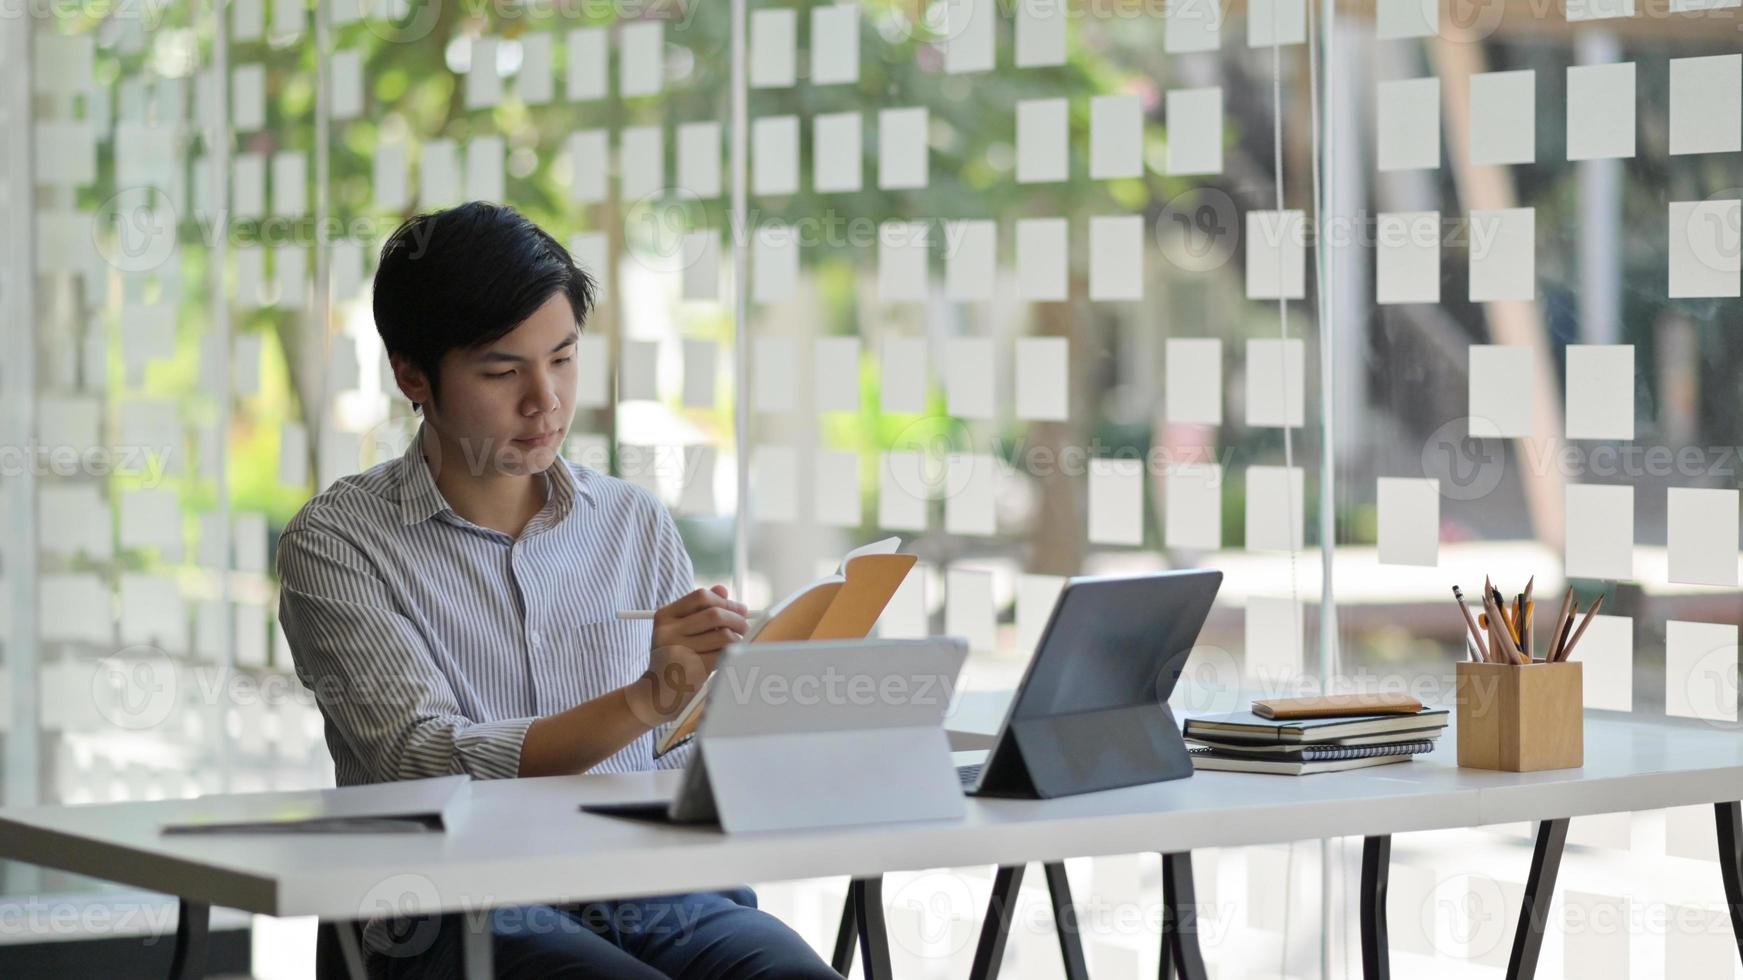 foto ritagliata di uno studente maschio asiatico con un laptop e un fermo che si prepara a completare la sua tesi per finire l'università.